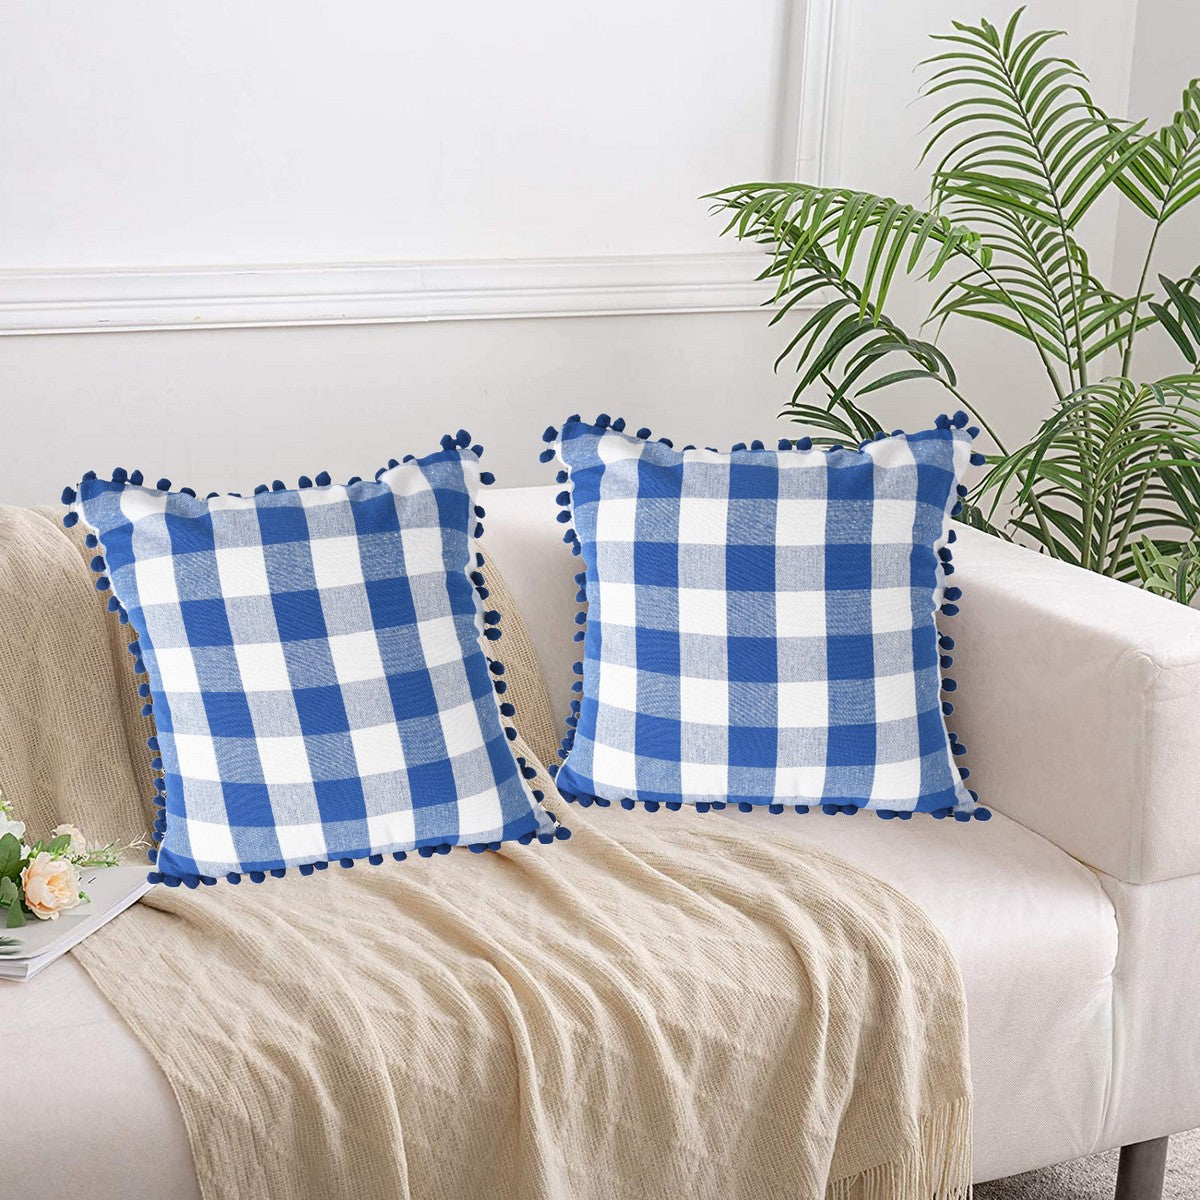 Lushomes Square Cushion Cover with Pom Pom, Cotton Sofa Pillow Cover Set of 2, 16x16 Inch, Big Checks, Blue and White Checks, Pillow Cushions Covers (Pack of 2, 40x40 Cms)